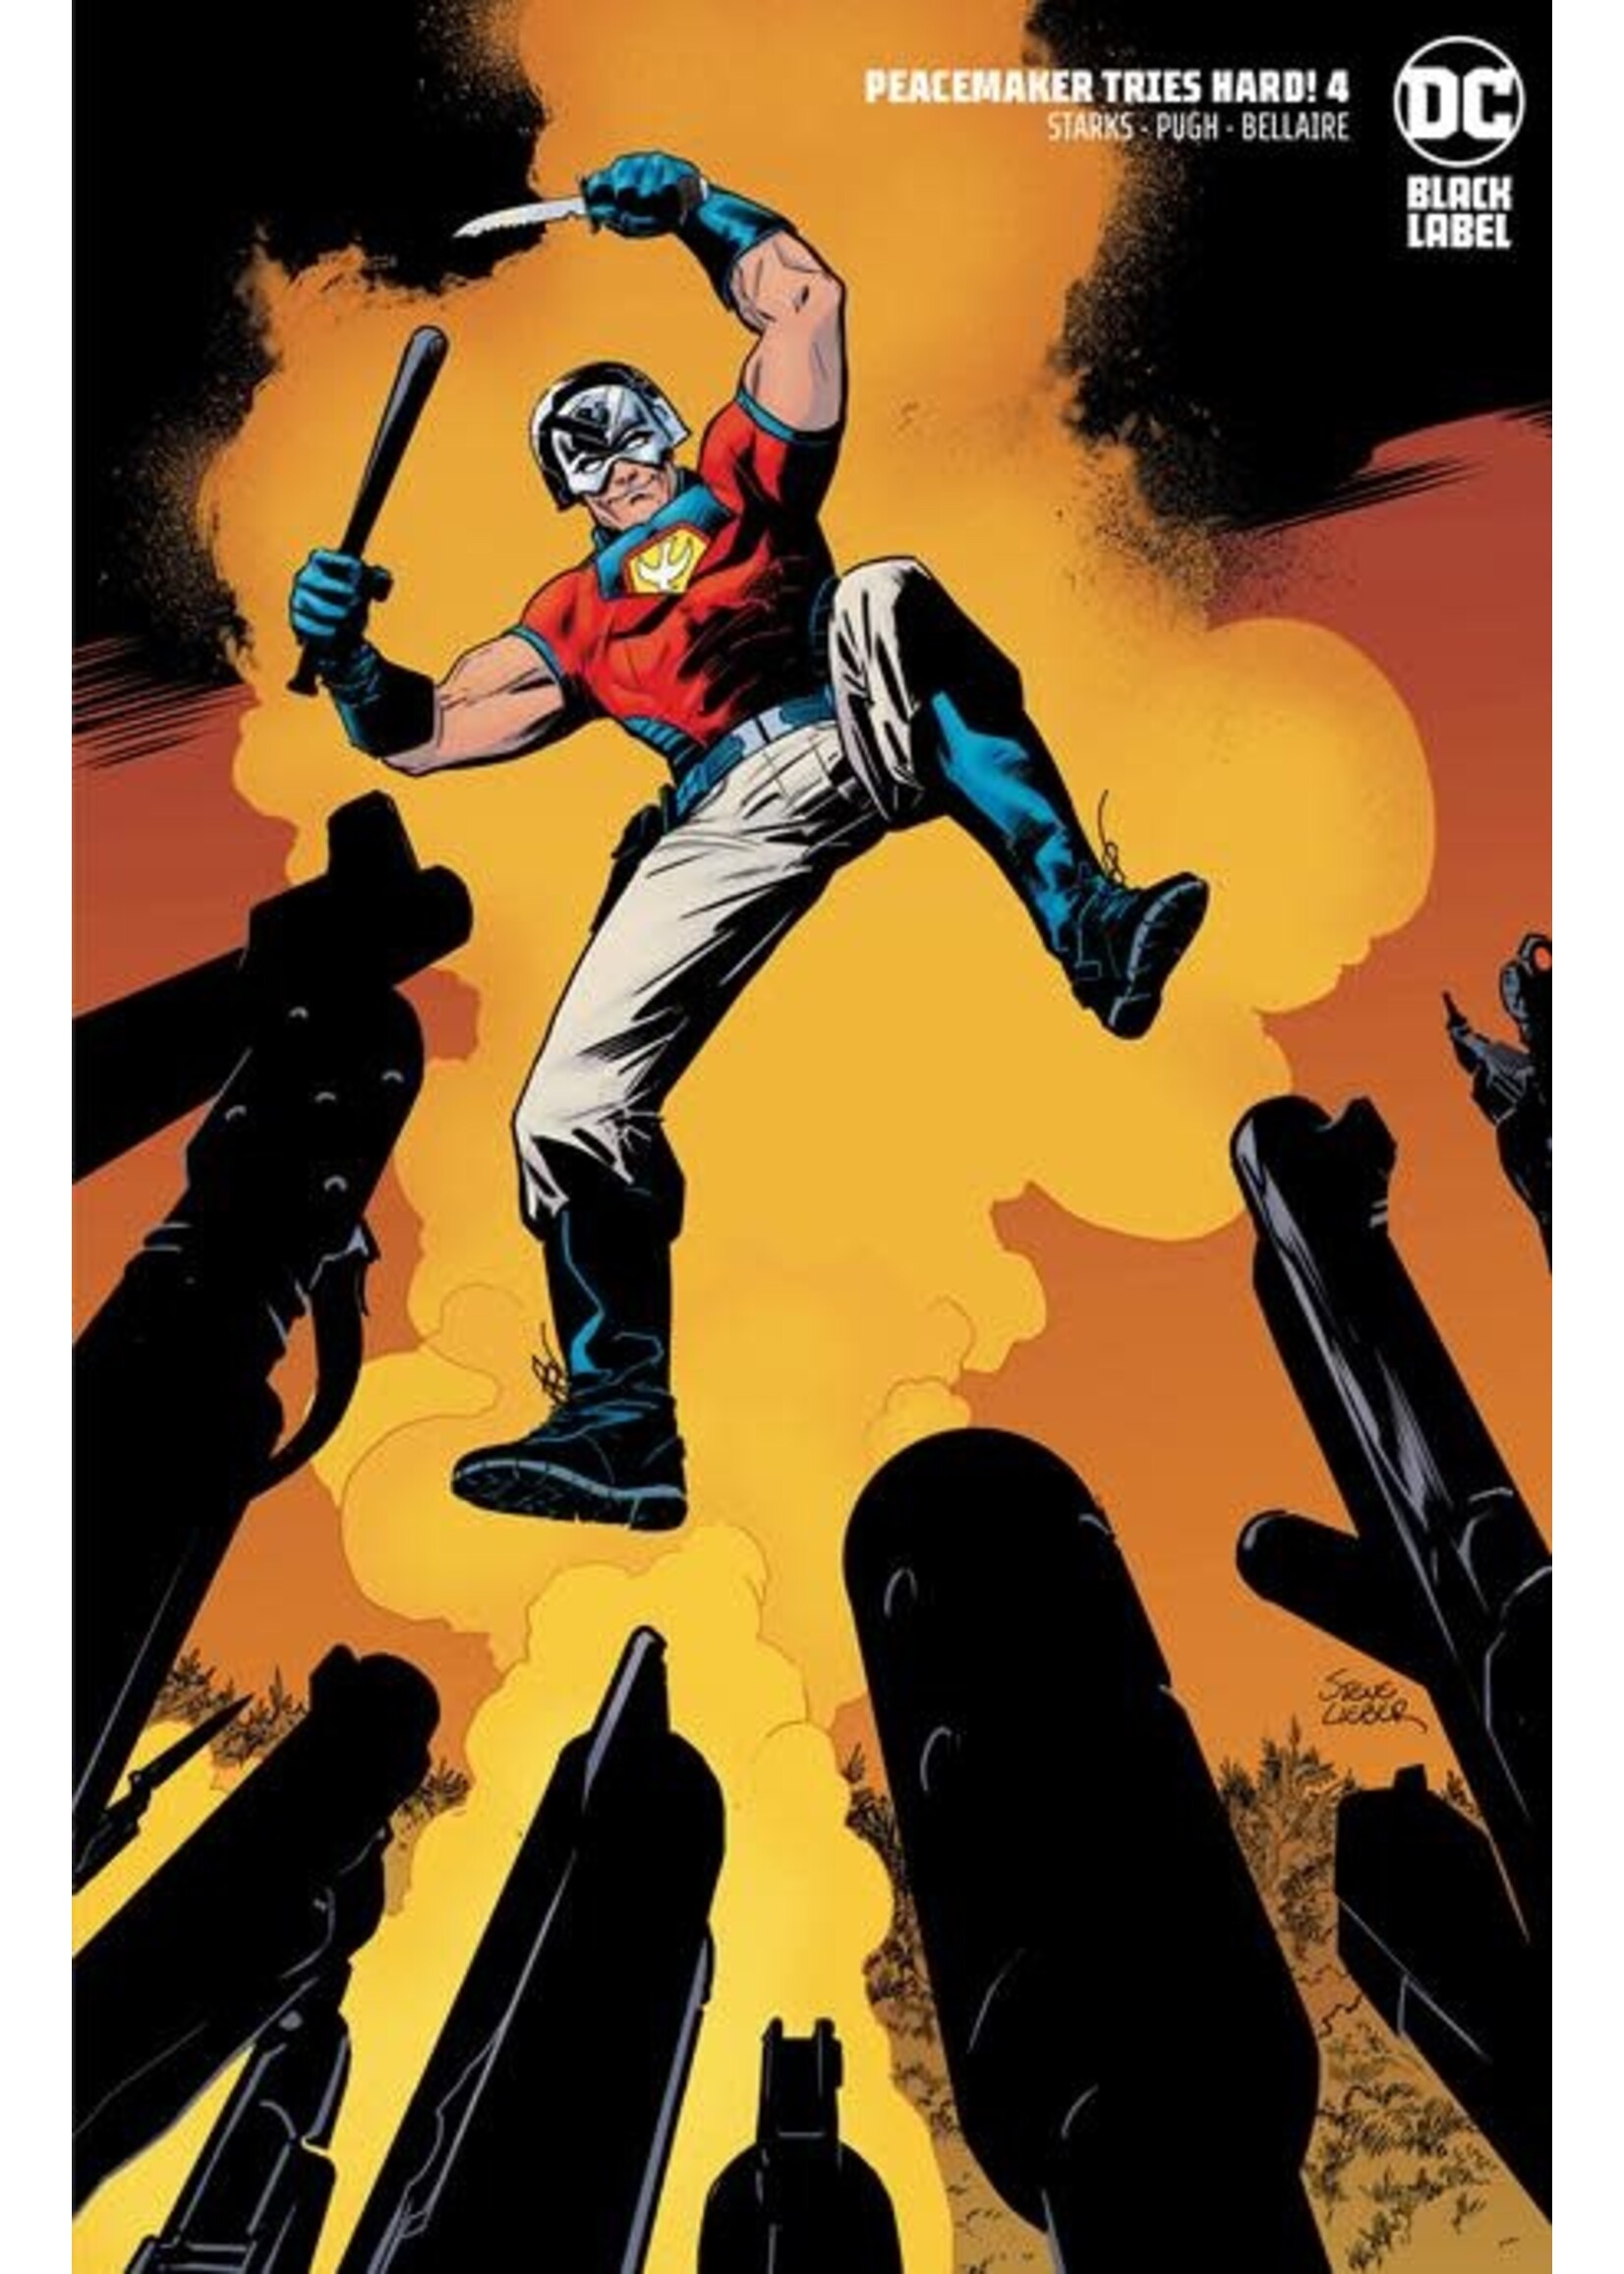 DC COMICS PEACEMAKER TRIES HARD! #4 LIEBER